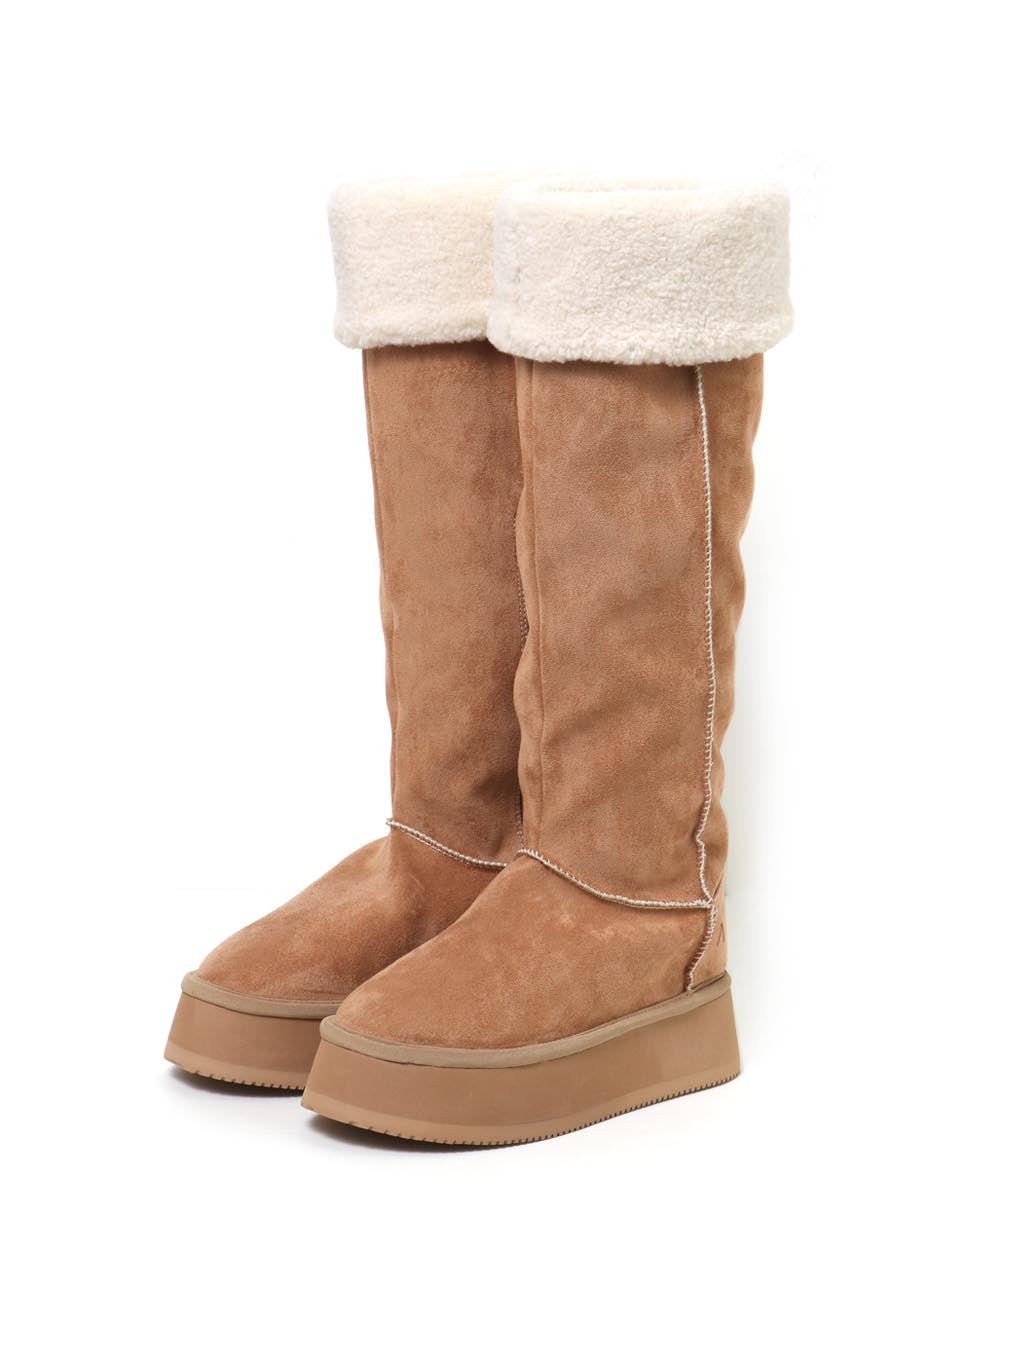 靴andmary Gigi mouton boots ベージュ 22.5 36 - ブーツ